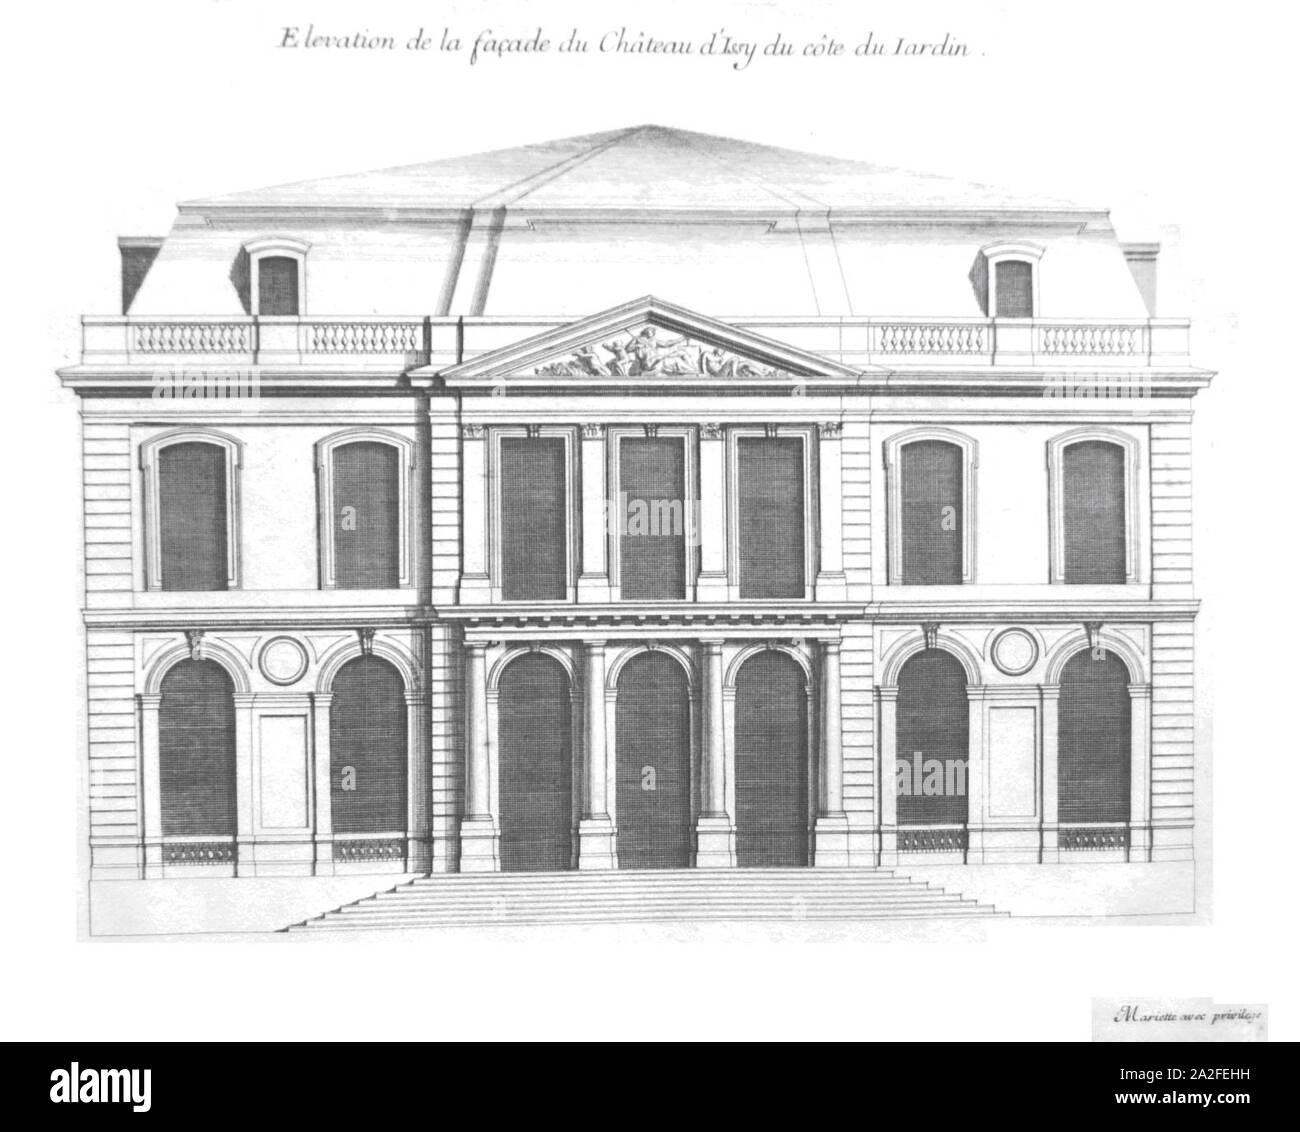 Elévation du Château Du côté des jardins Mariette 1725. Stockfoto